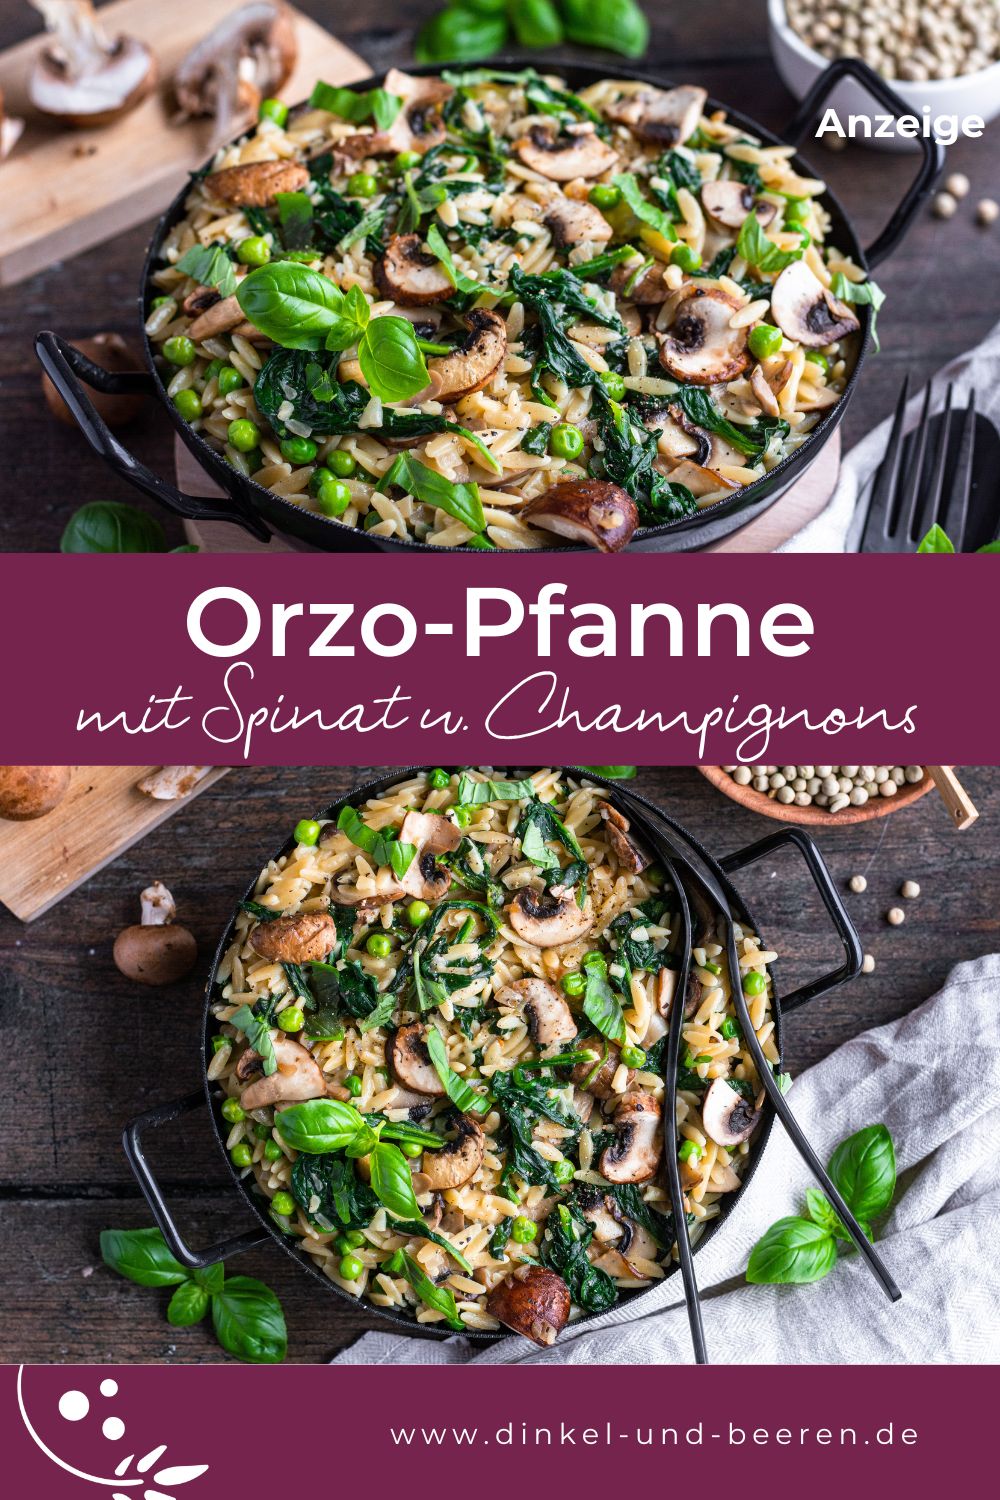 Pinterest-Grafik mit zwei Fotos einer Orzo-Pfanne, dazu der Schriftzug "Orzo-Pfanne mit Spinat und Champignons".